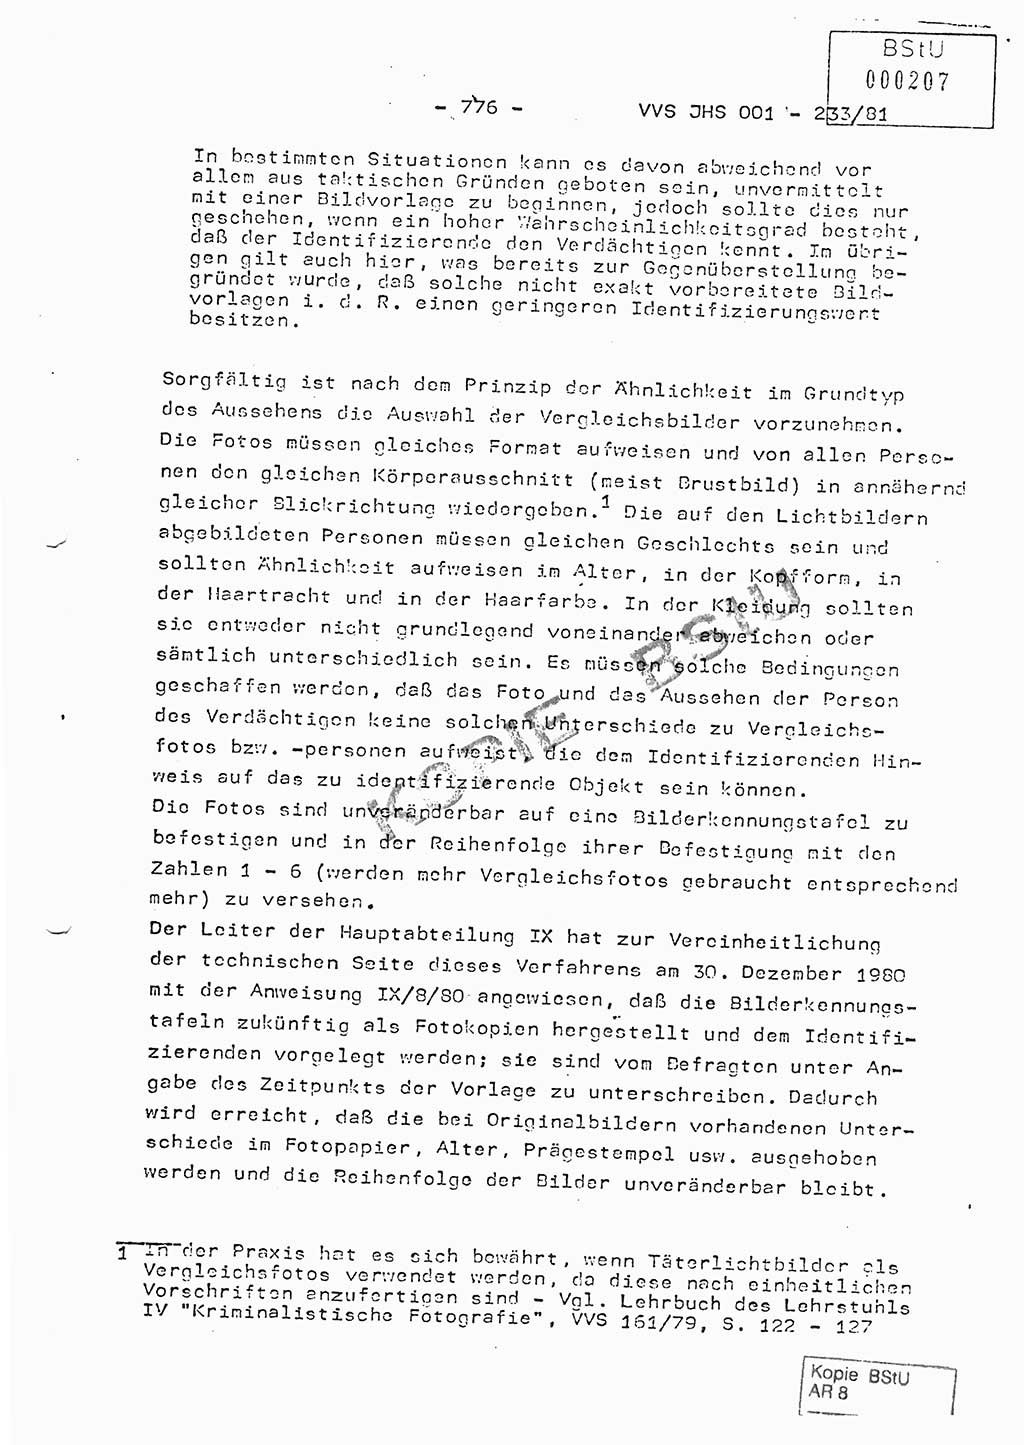 Dissertation Oberstleutnant Horst Zank (JHS), Oberstleutnant Dr. Karl-Heinz Knoblauch (JHS), Oberstleutnant Gustav-Adolf Kowalewski (HA Ⅸ), Oberstleutnant Wolfgang Plötner (HA Ⅸ), Ministerium für Staatssicherheit (MfS) [Deutsche Demokratische Republik (DDR)], Juristische Hochschule (JHS), Vertrauliche Verschlußsache (VVS) o001-233/81, Potsdam 1981, Blatt 776 (Diss. MfS DDR JHS VVS o001-233/81 1981, Bl. 776)